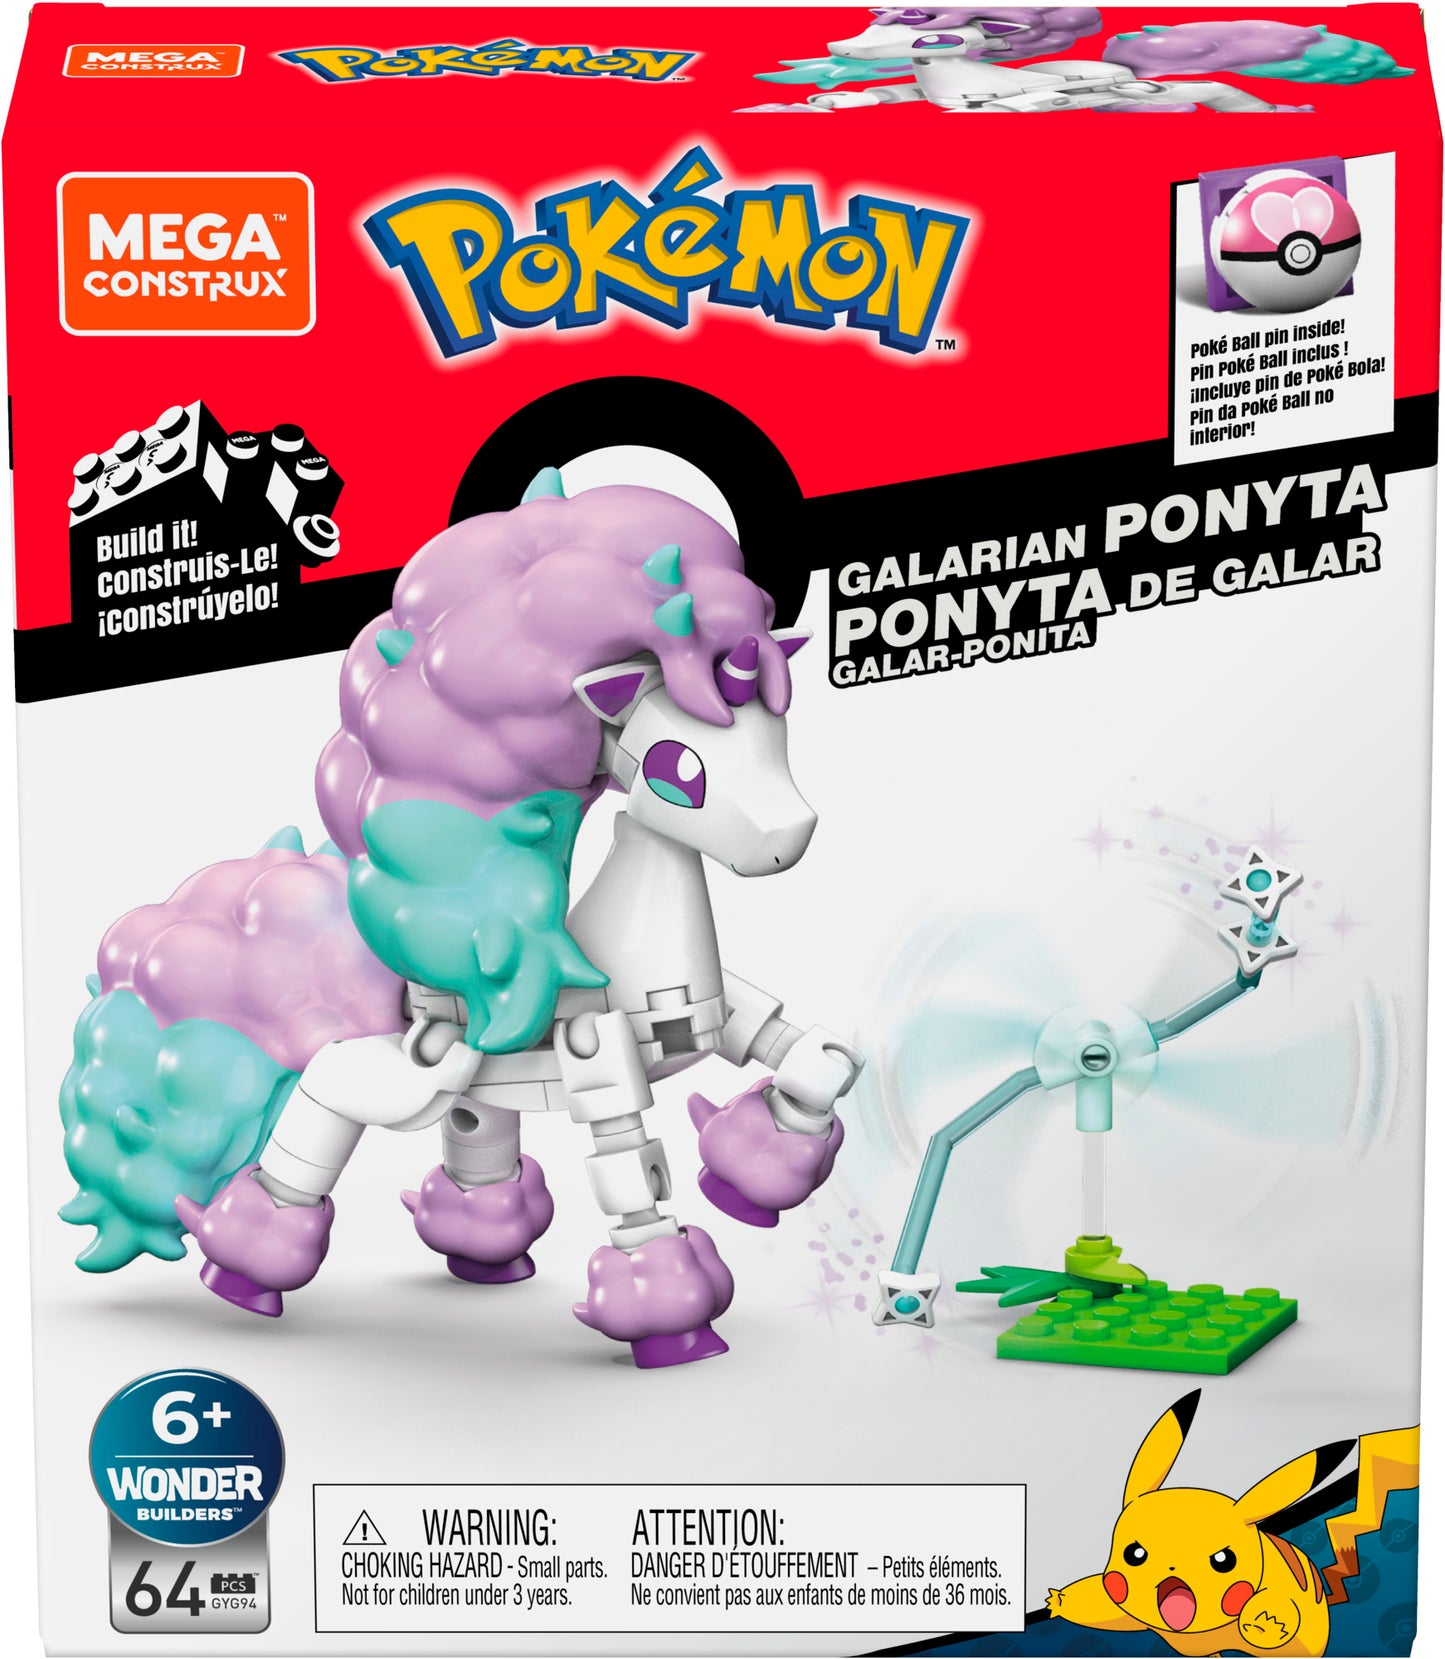 MEGA™ Construx Pokémon Power Packs Assortment